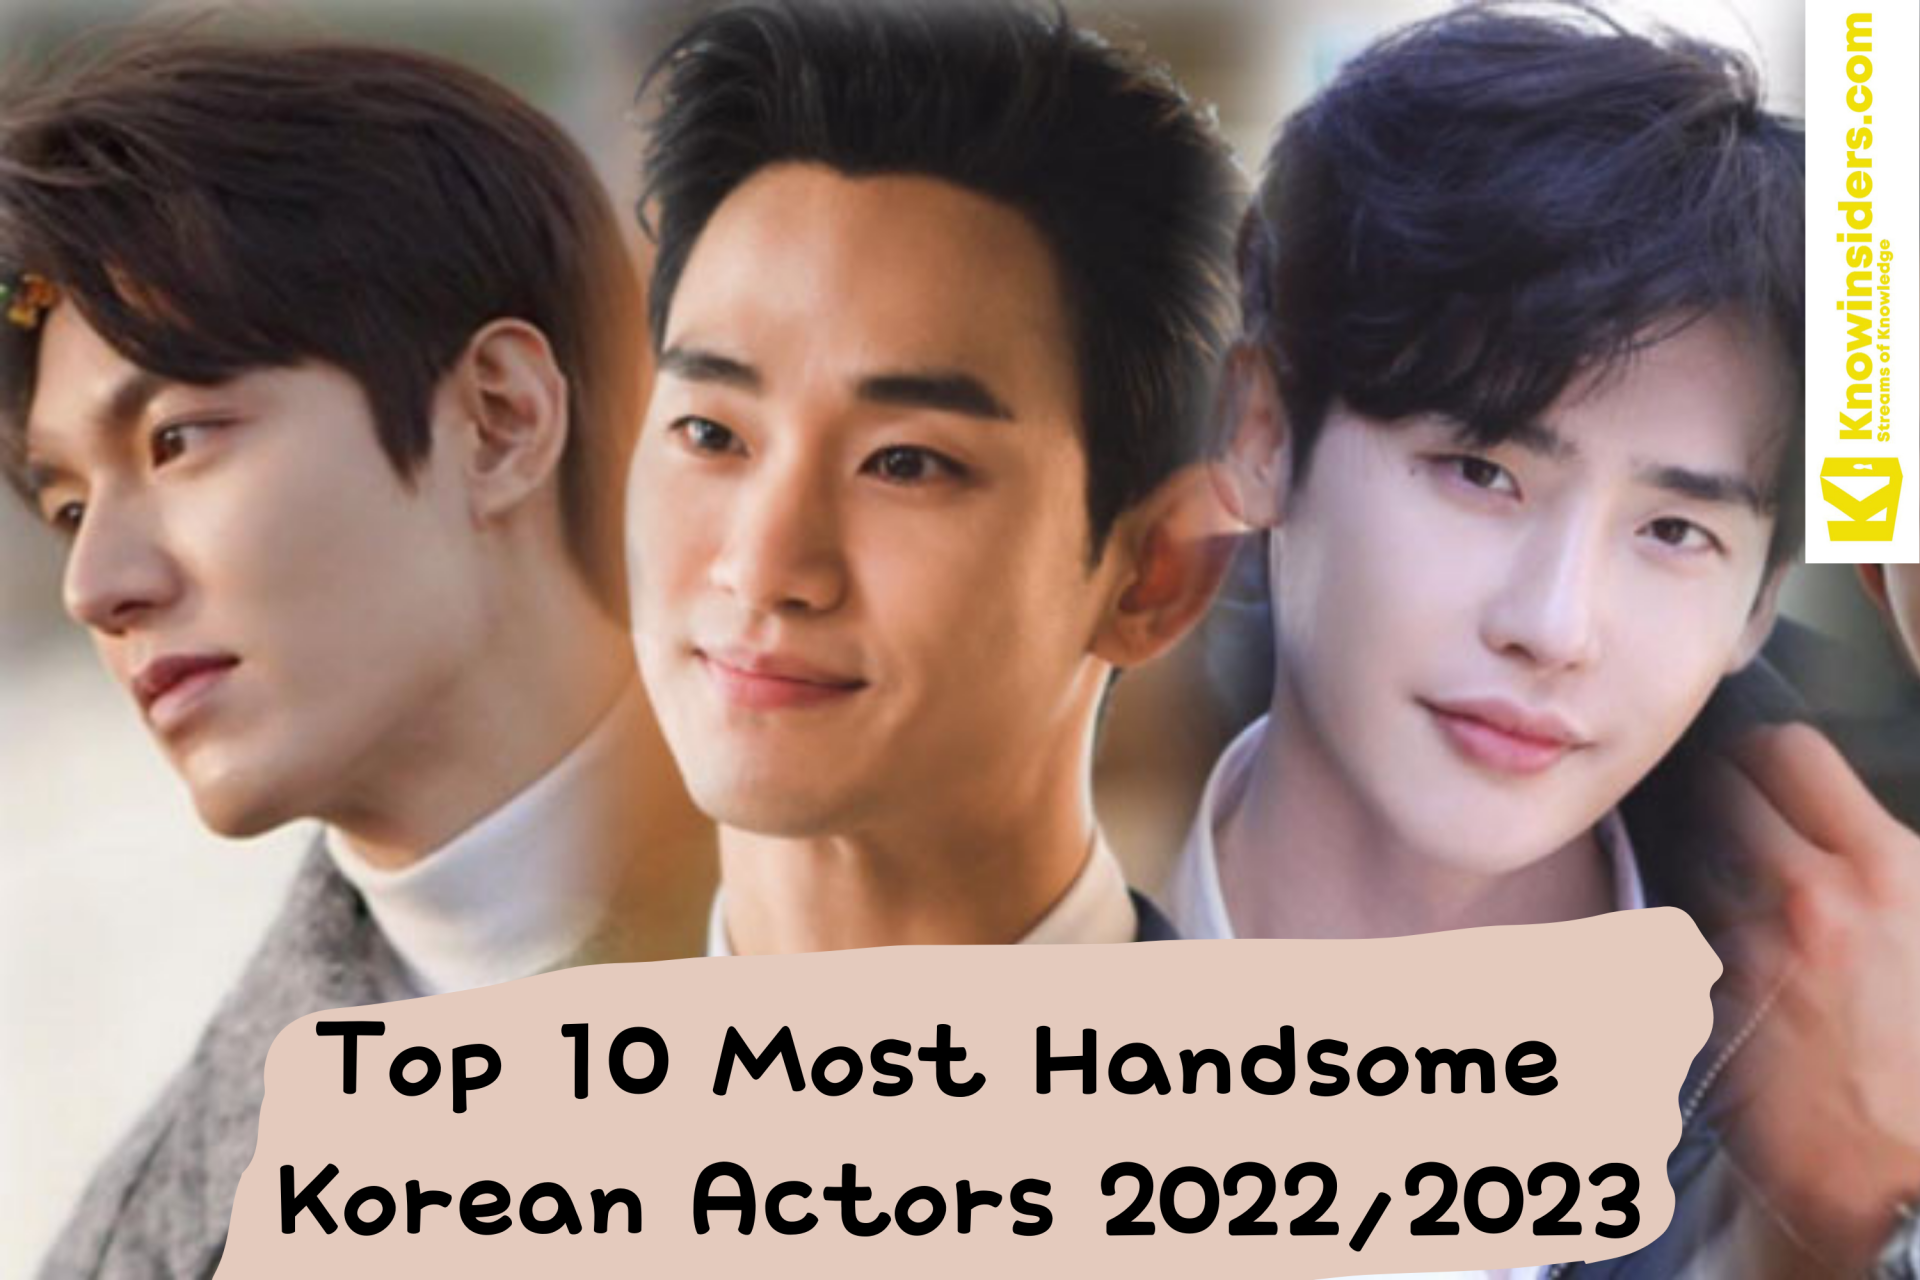 Top 10 Most Handsome Young Korean Actors in 2023